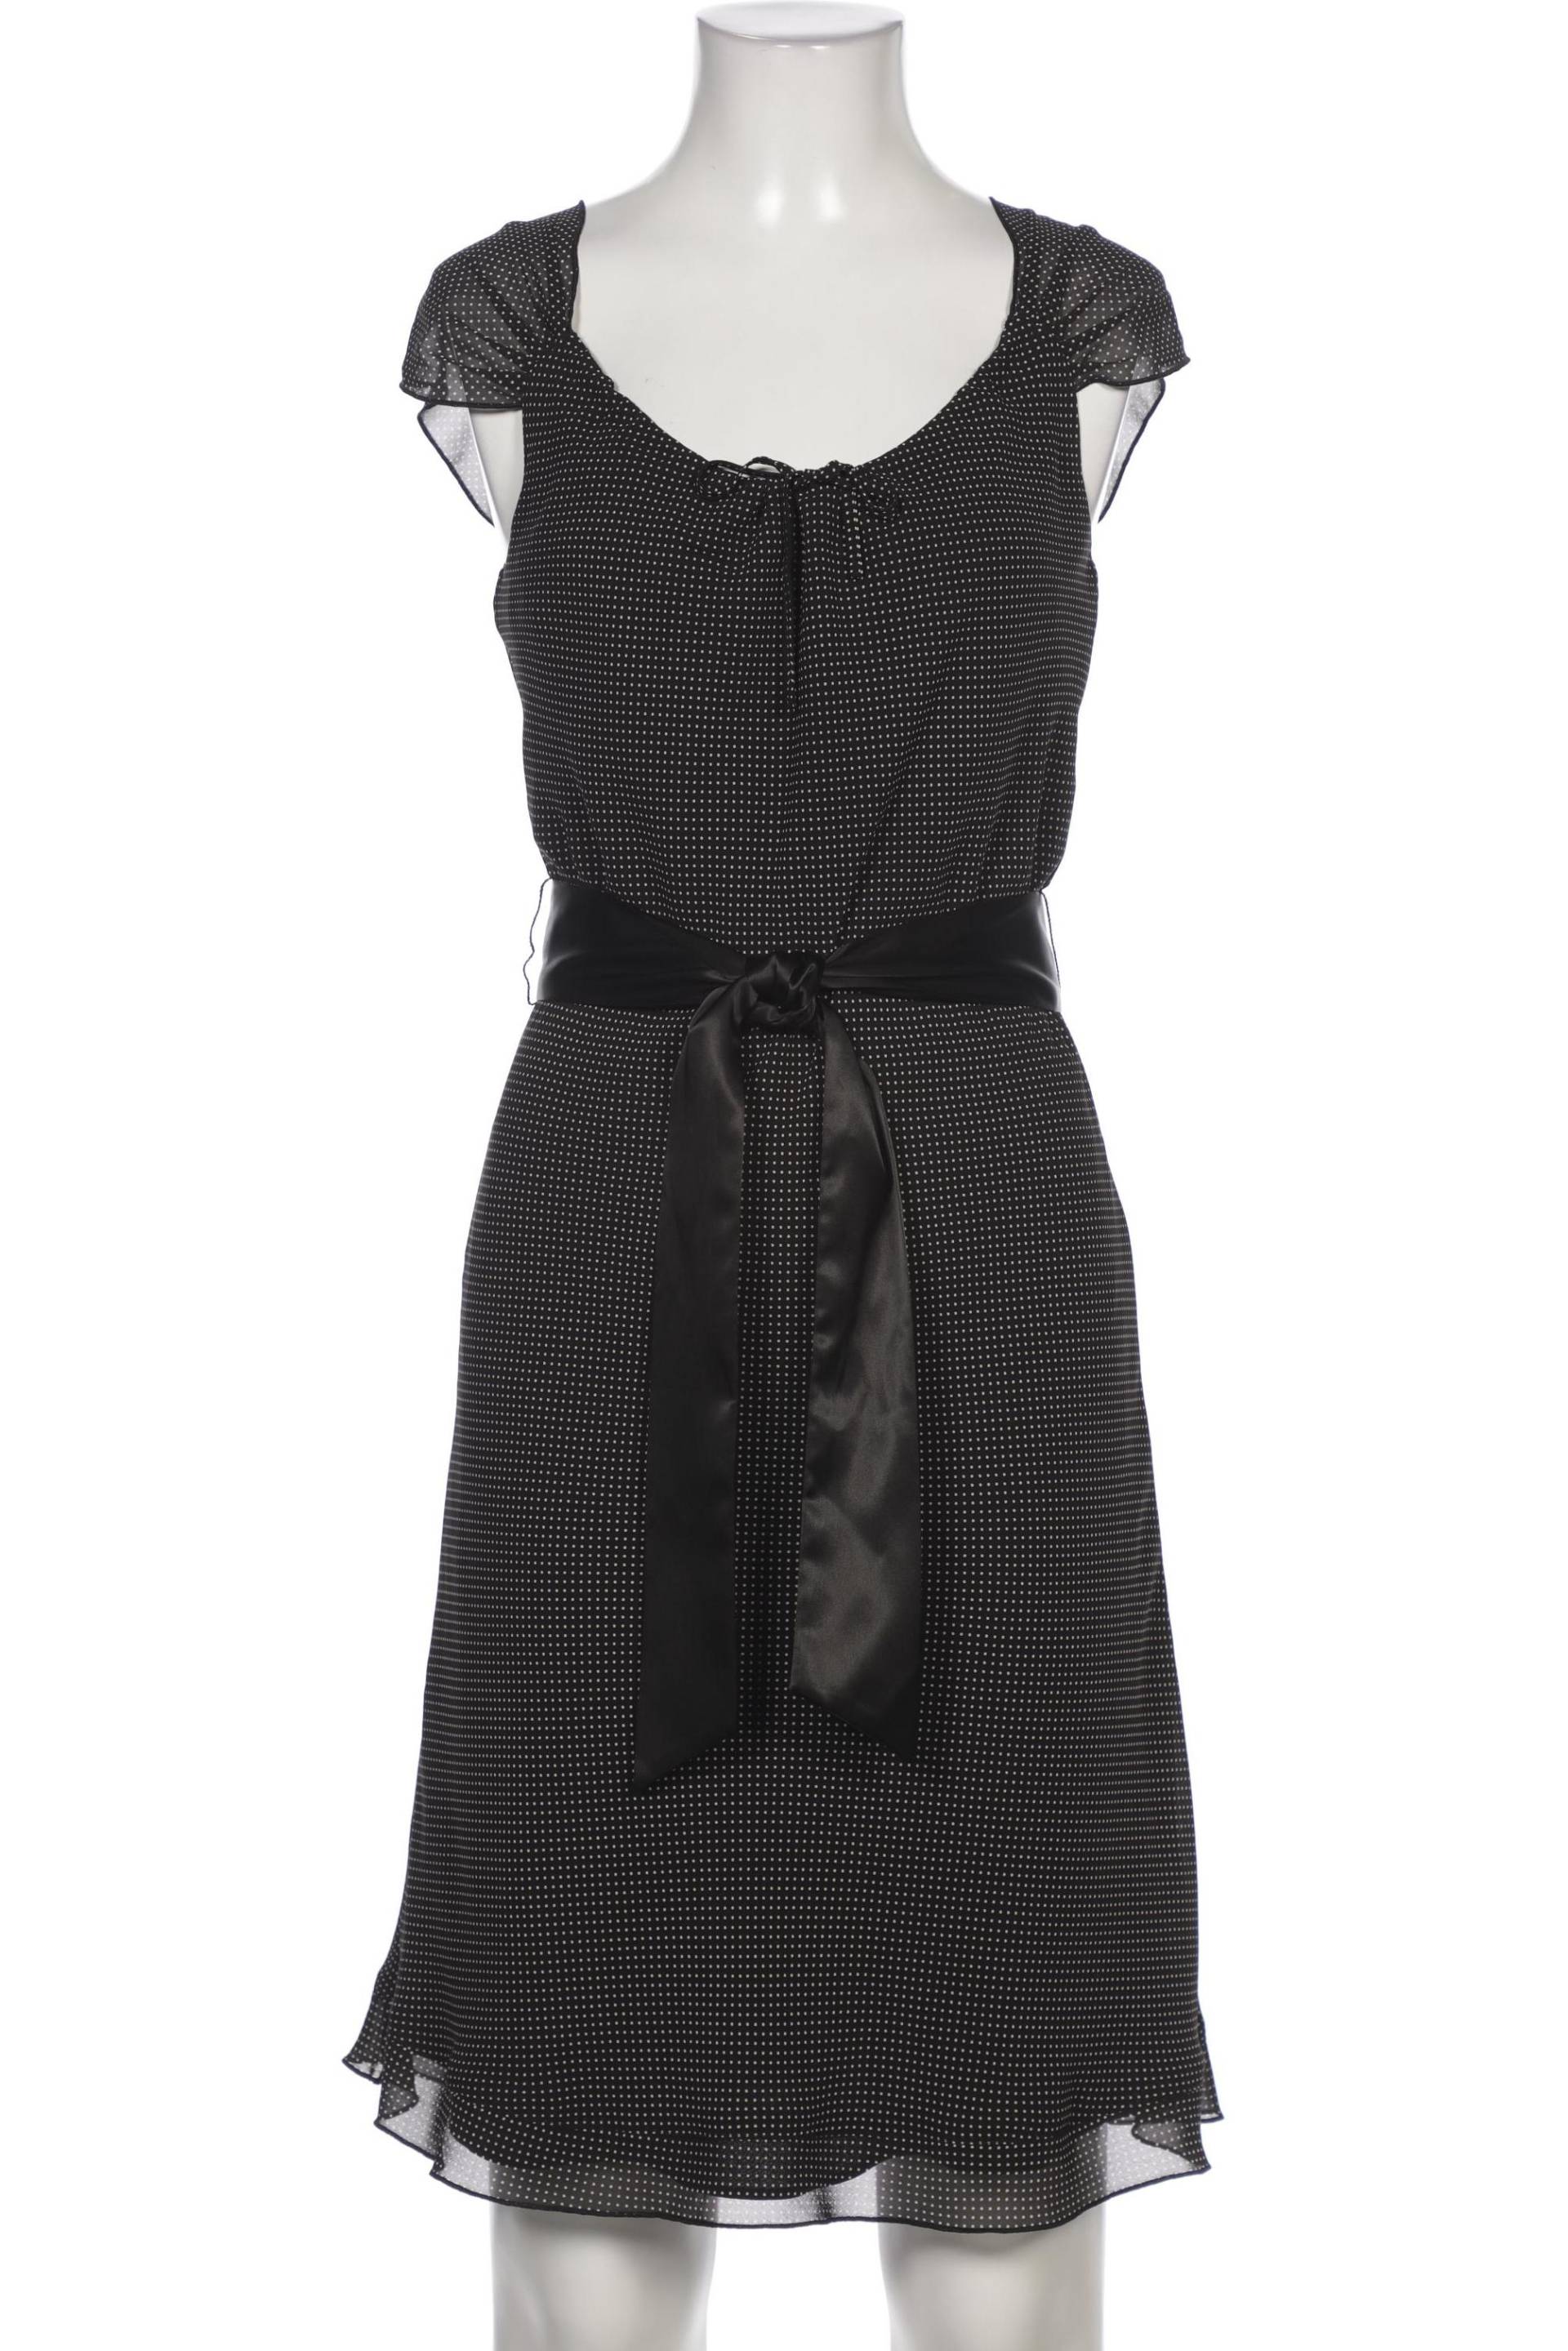 Savannah Damen Kleid, schwarz, Gr. 34 von Savannah